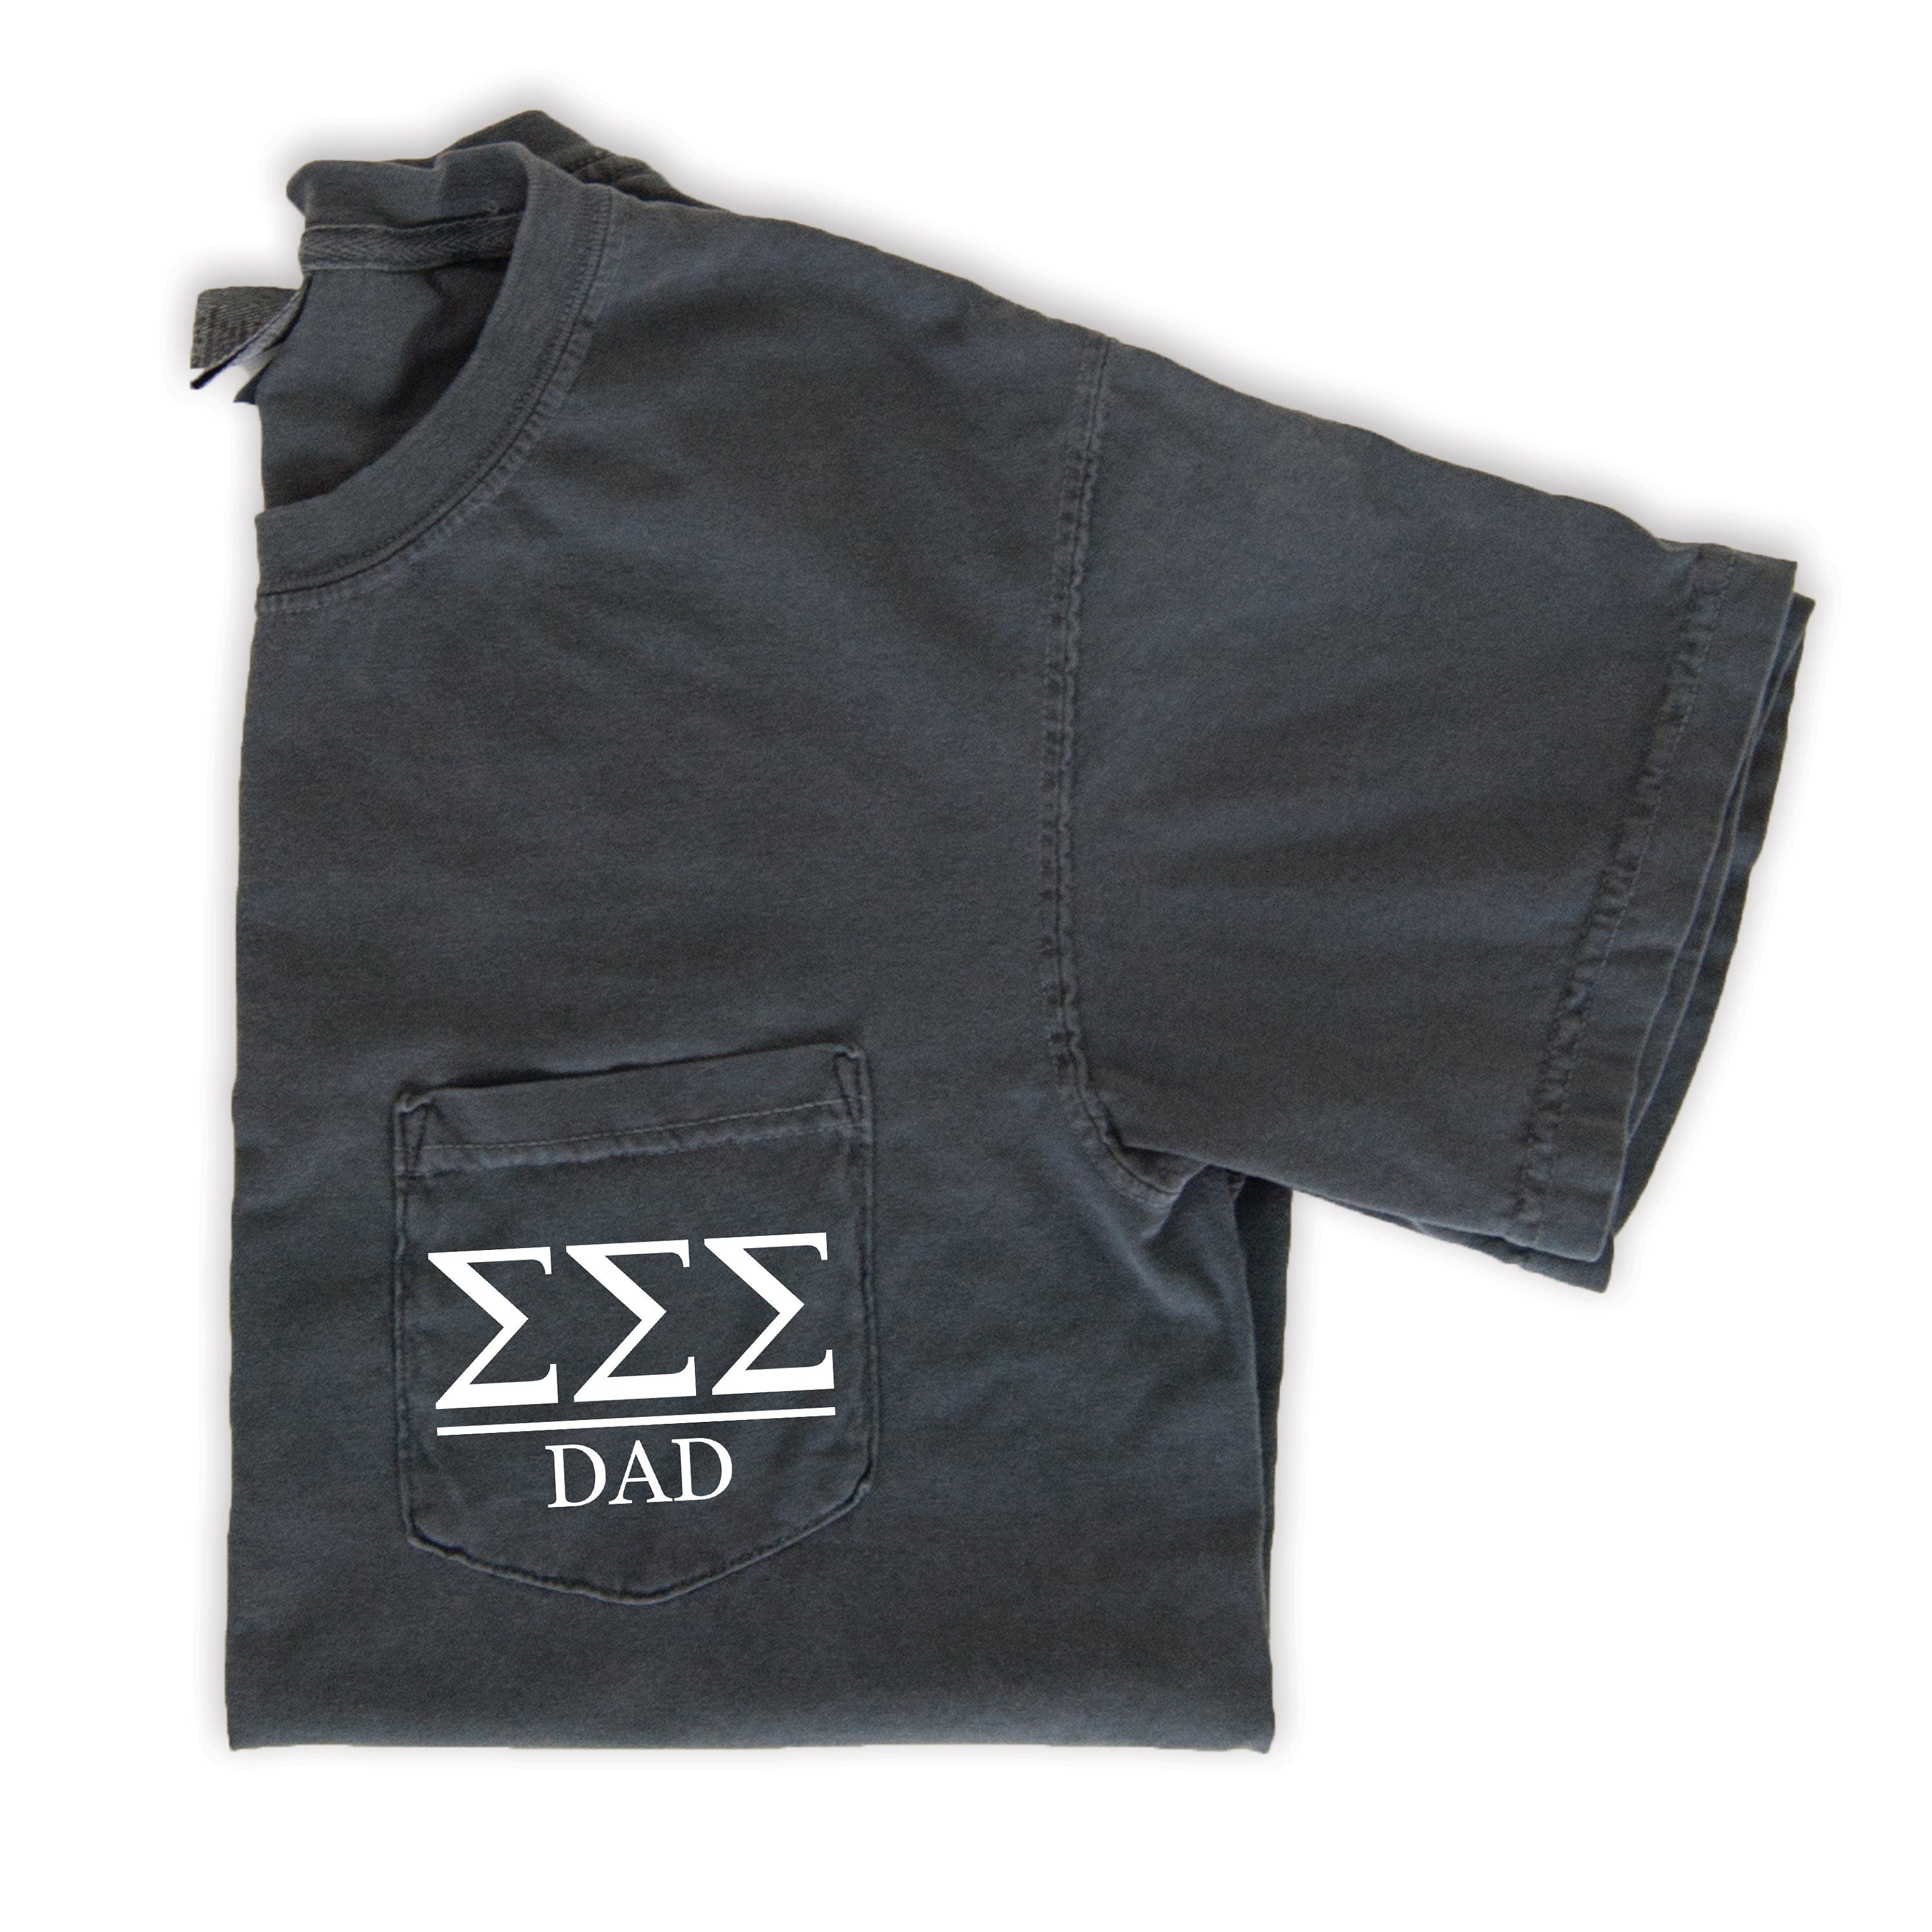 Sigma Sigma Sigma Dad T-Shirt - Grey - Go Greek Chic